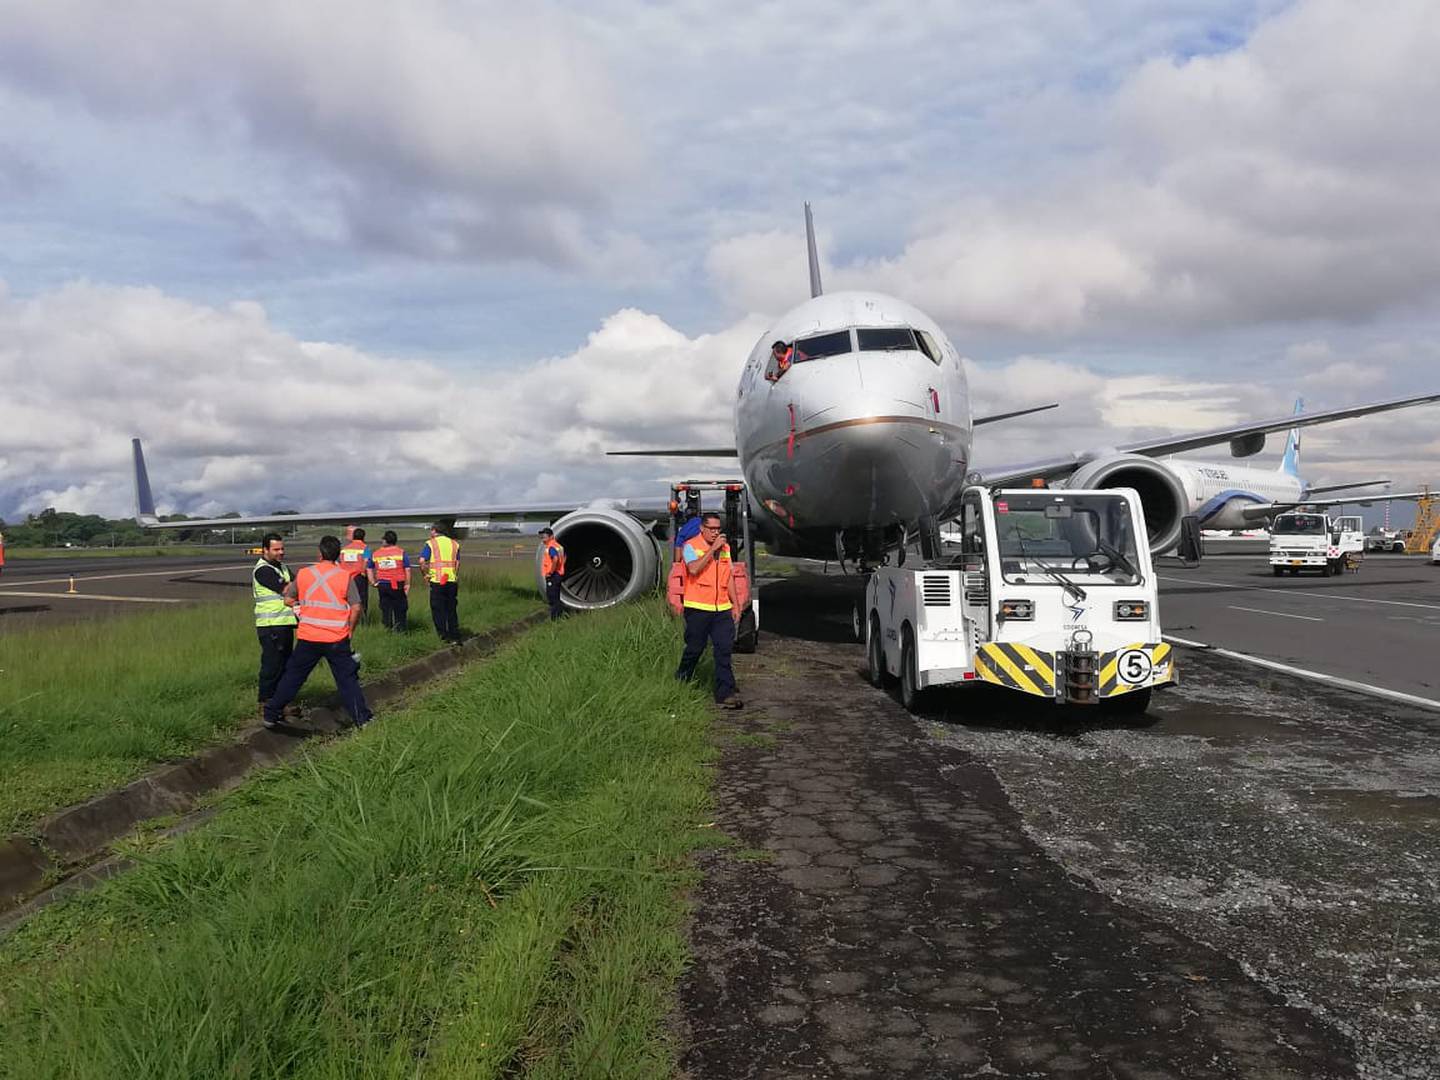 Solo daños materiales ocurrieron luego de que la llanta derecha del avión quedó atascada. Foto. Shirley Vásquez.